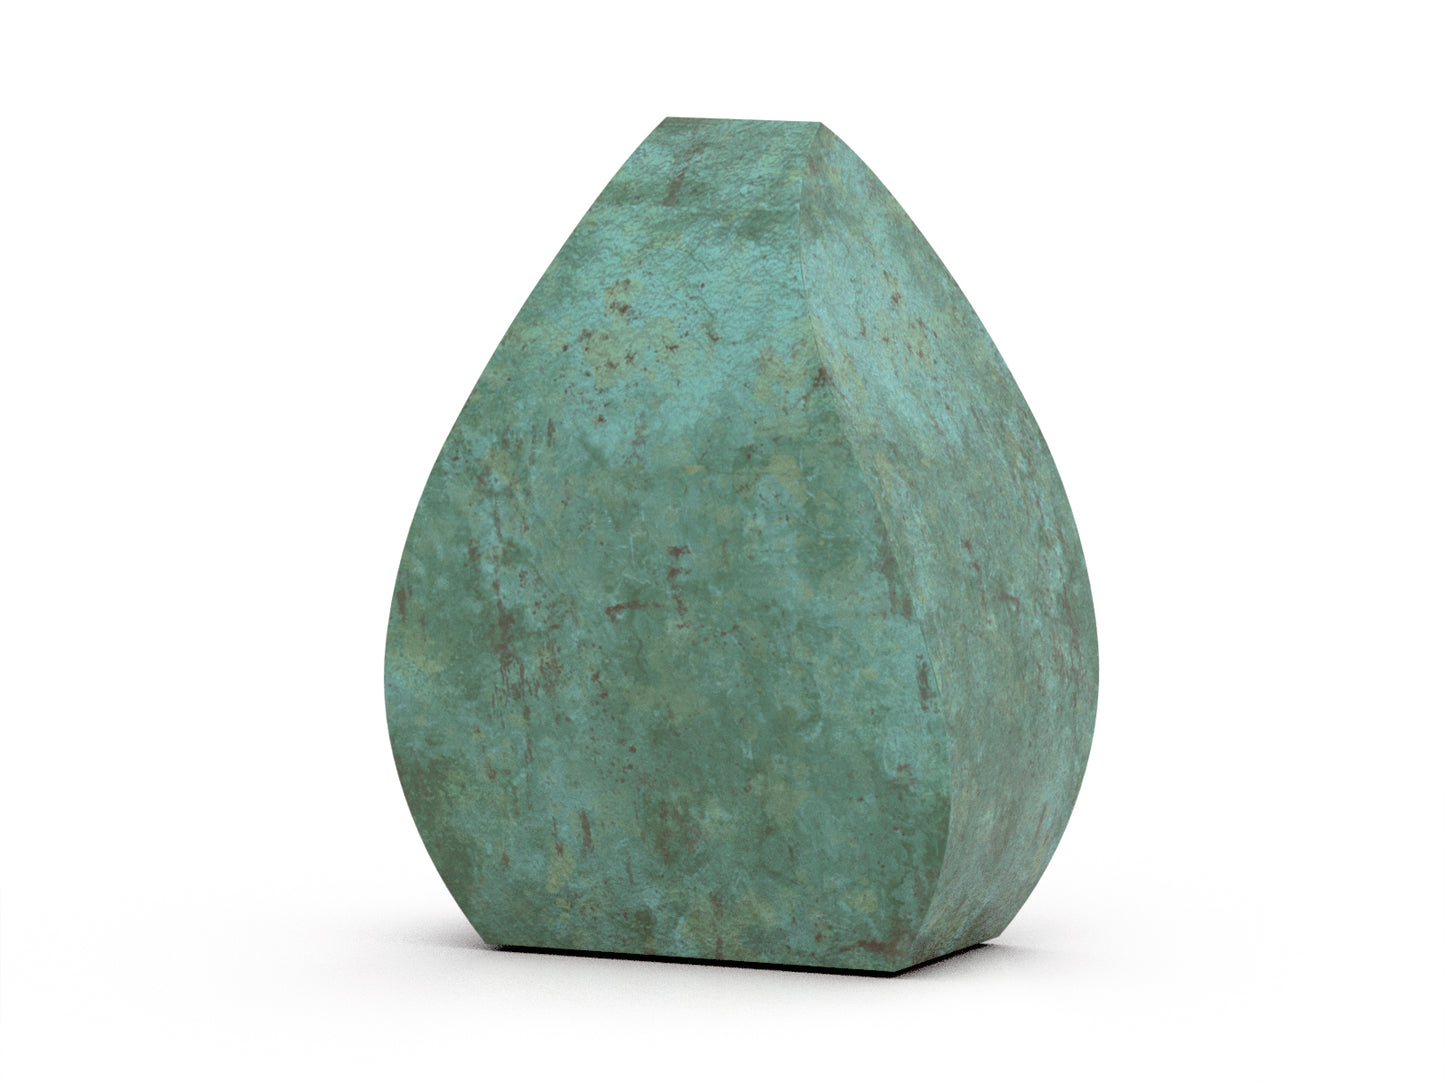 bronzen urn in het groen tulp vorm